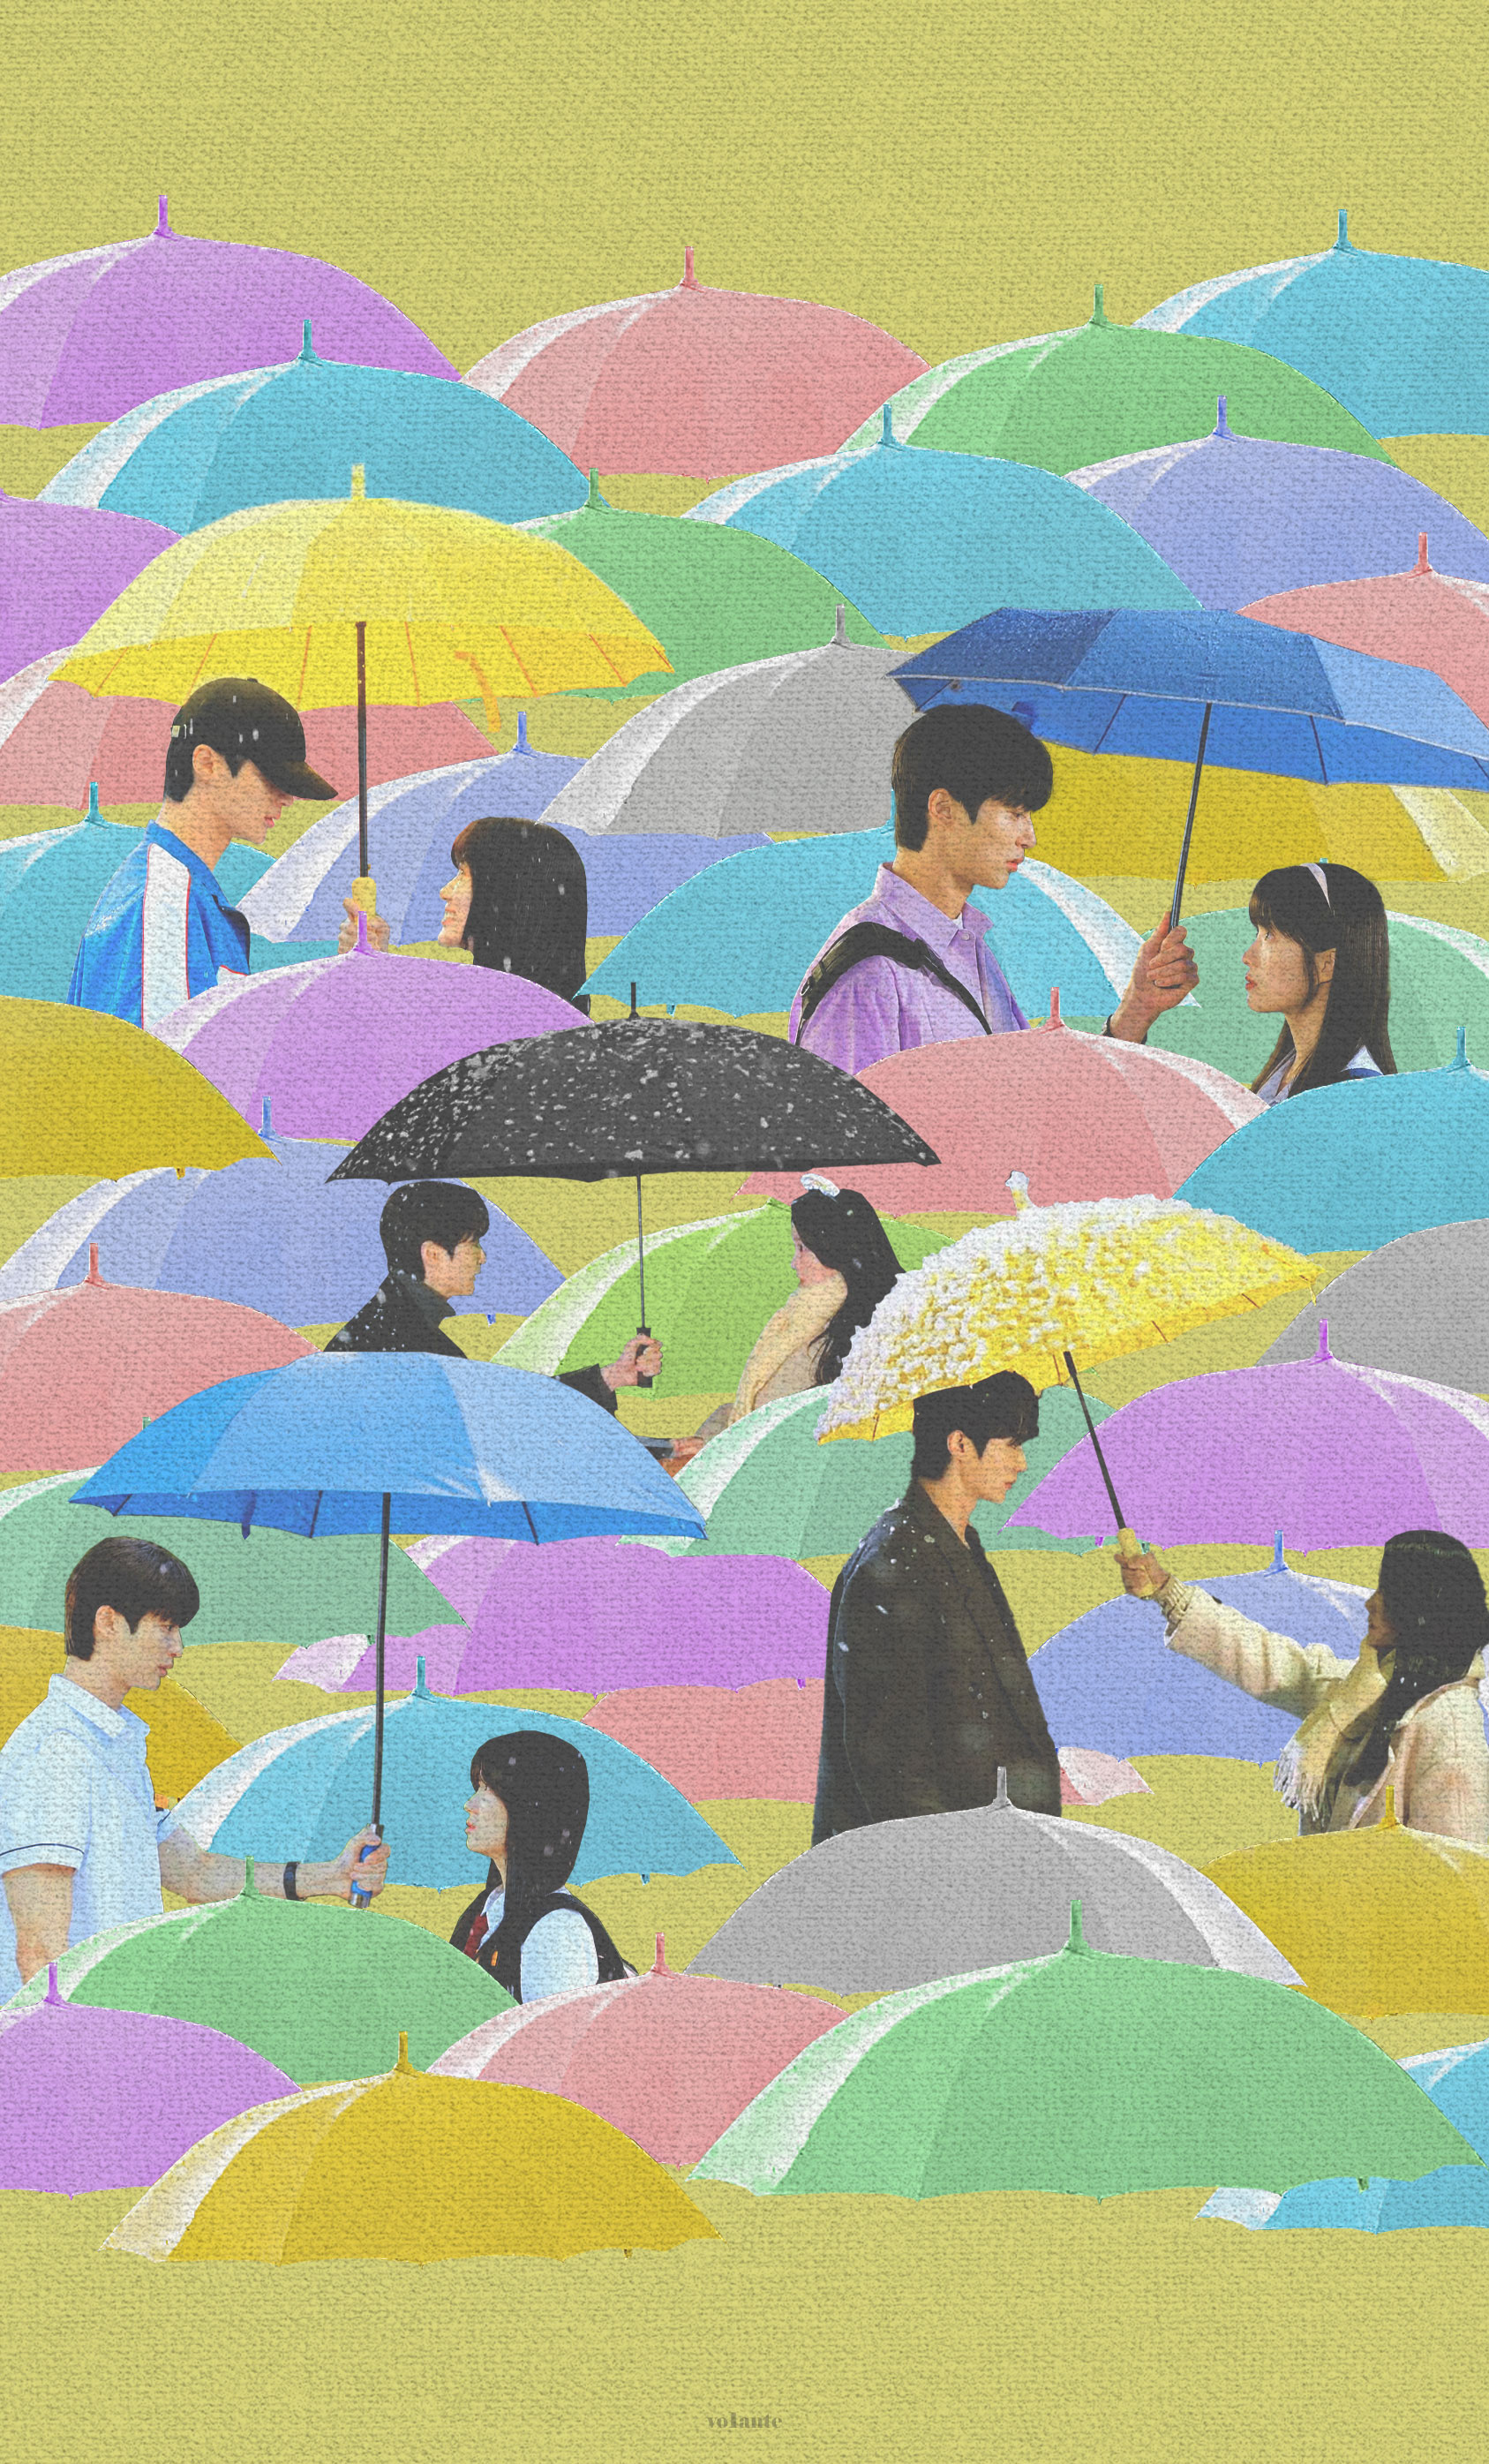 [잡담] 솔선 우산 리디자인 포스터 예술이다 | 인스티즈